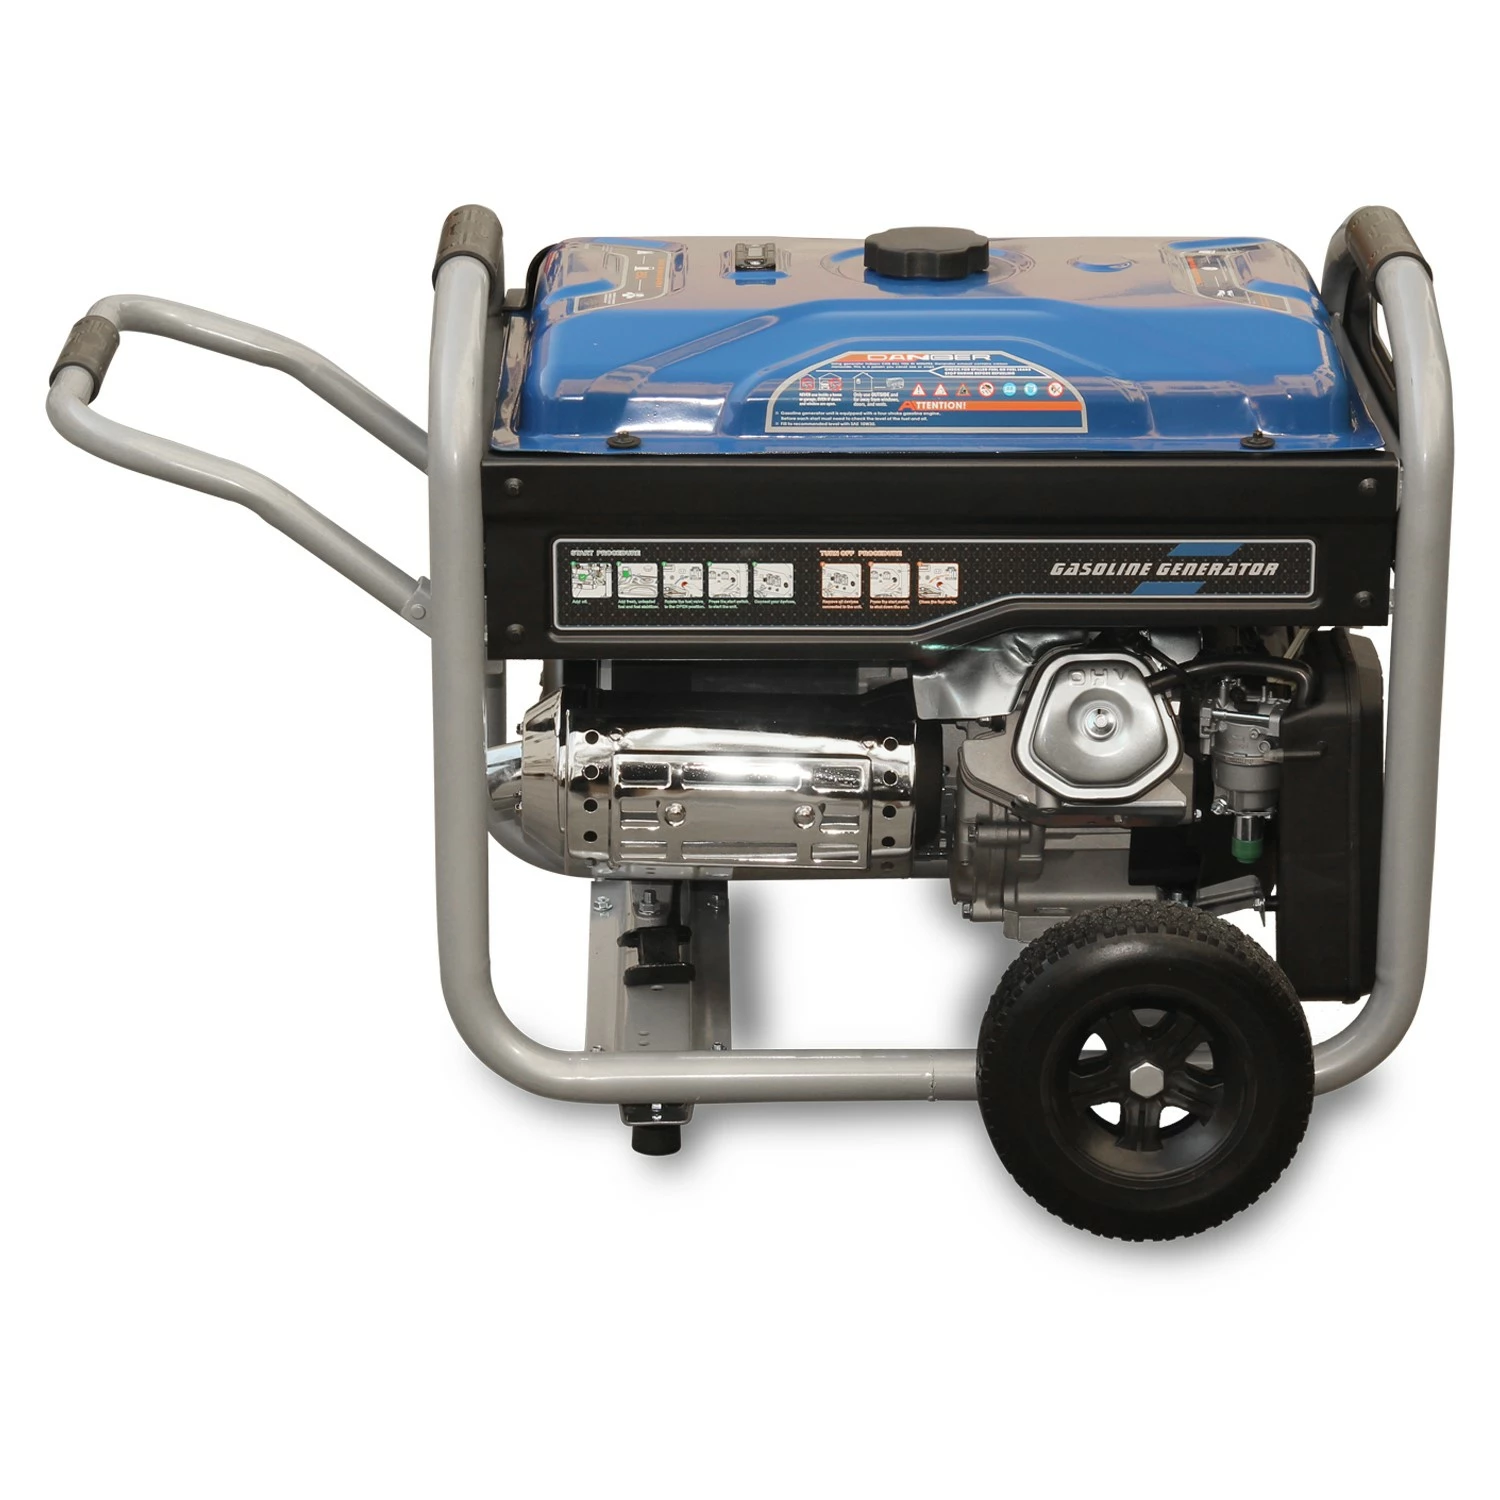 Hyundai LS6875EB Benzine generator met elektrische start - OHV Motor - 5000W